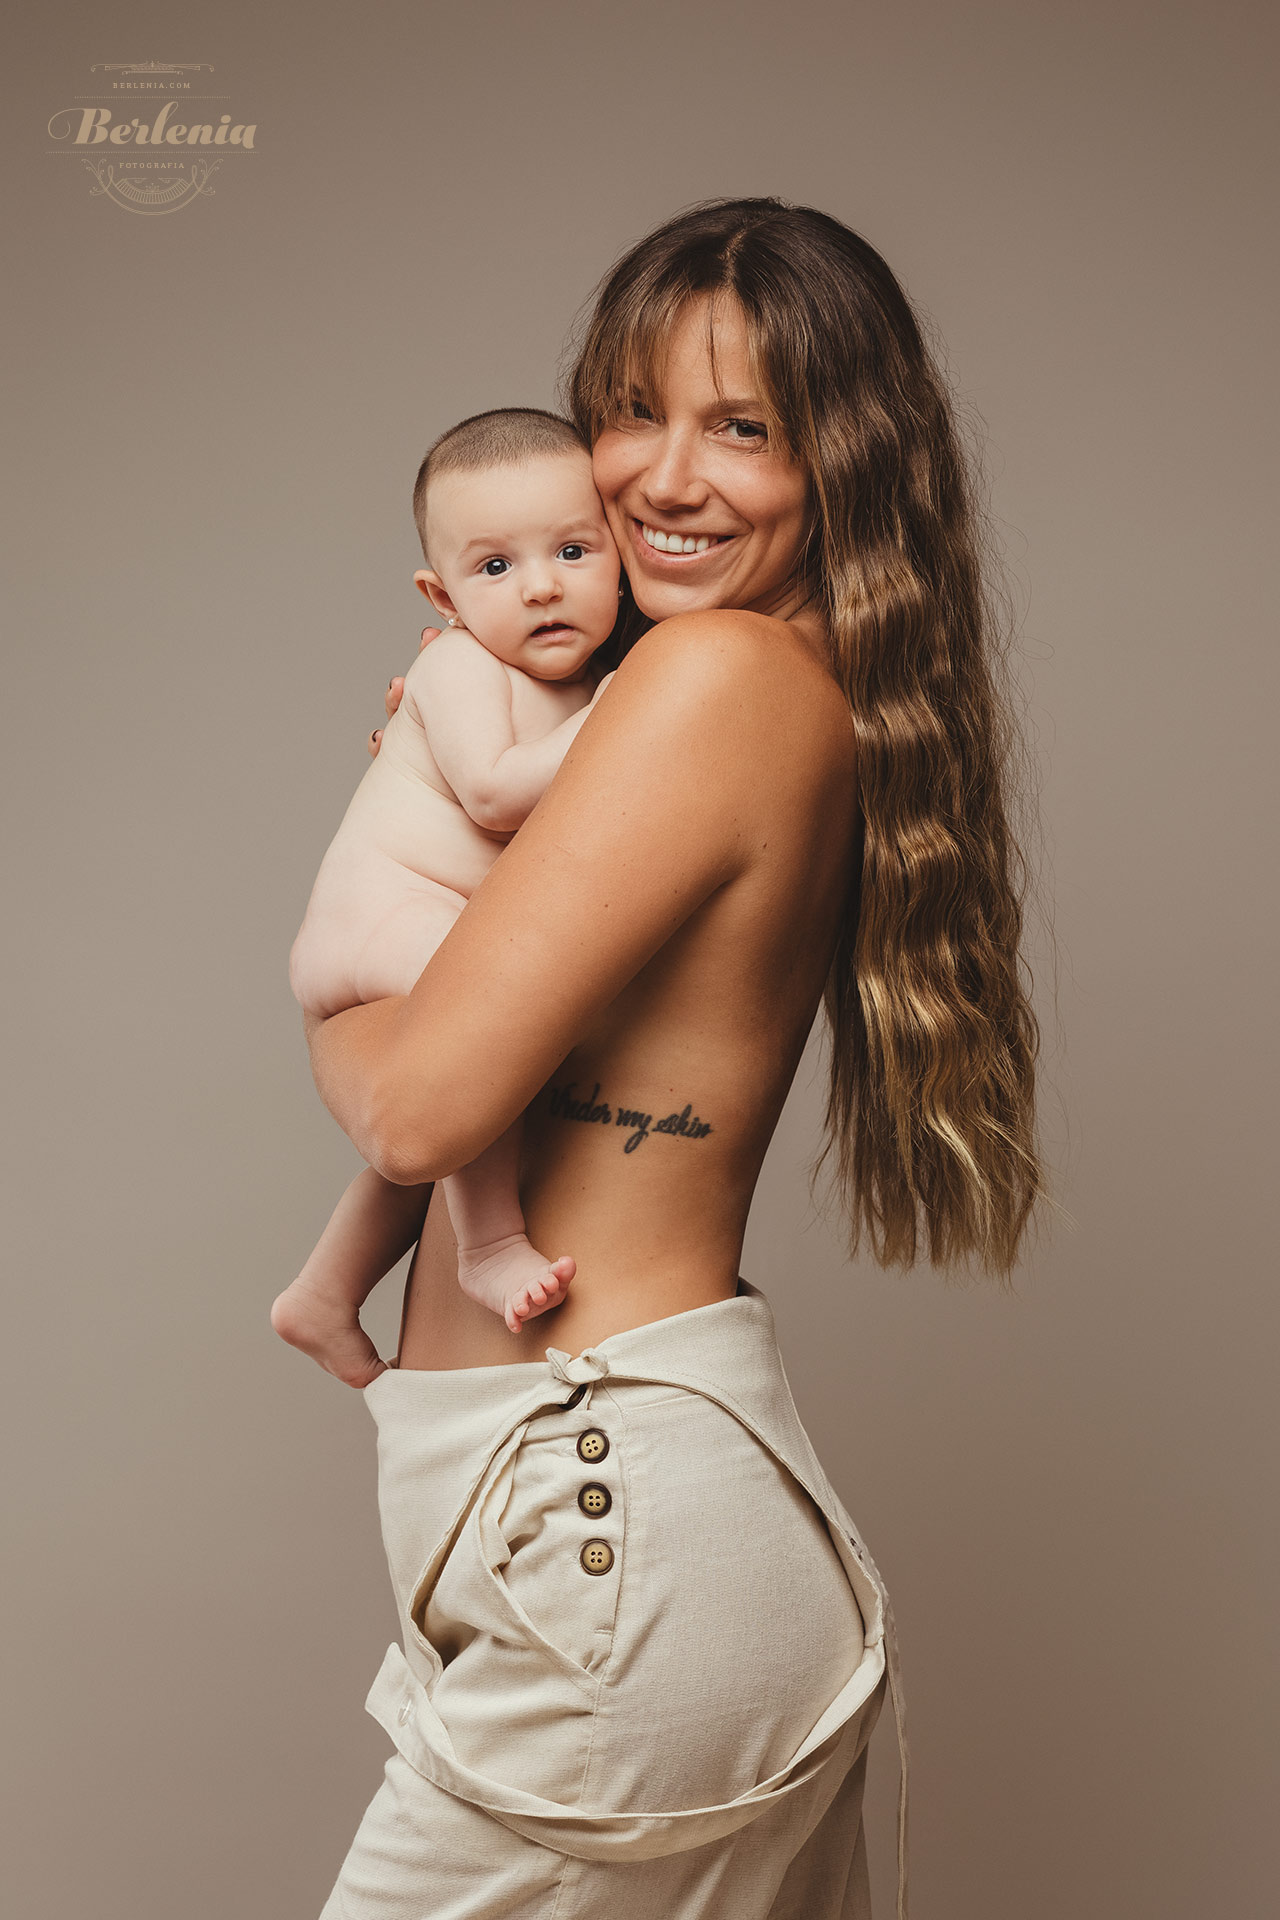 Sesión de fotografía de bebé (3 meses) - Villa Urquiza, CABA, Buenos Aires, Argentina - Berlenia Fotografía - 21